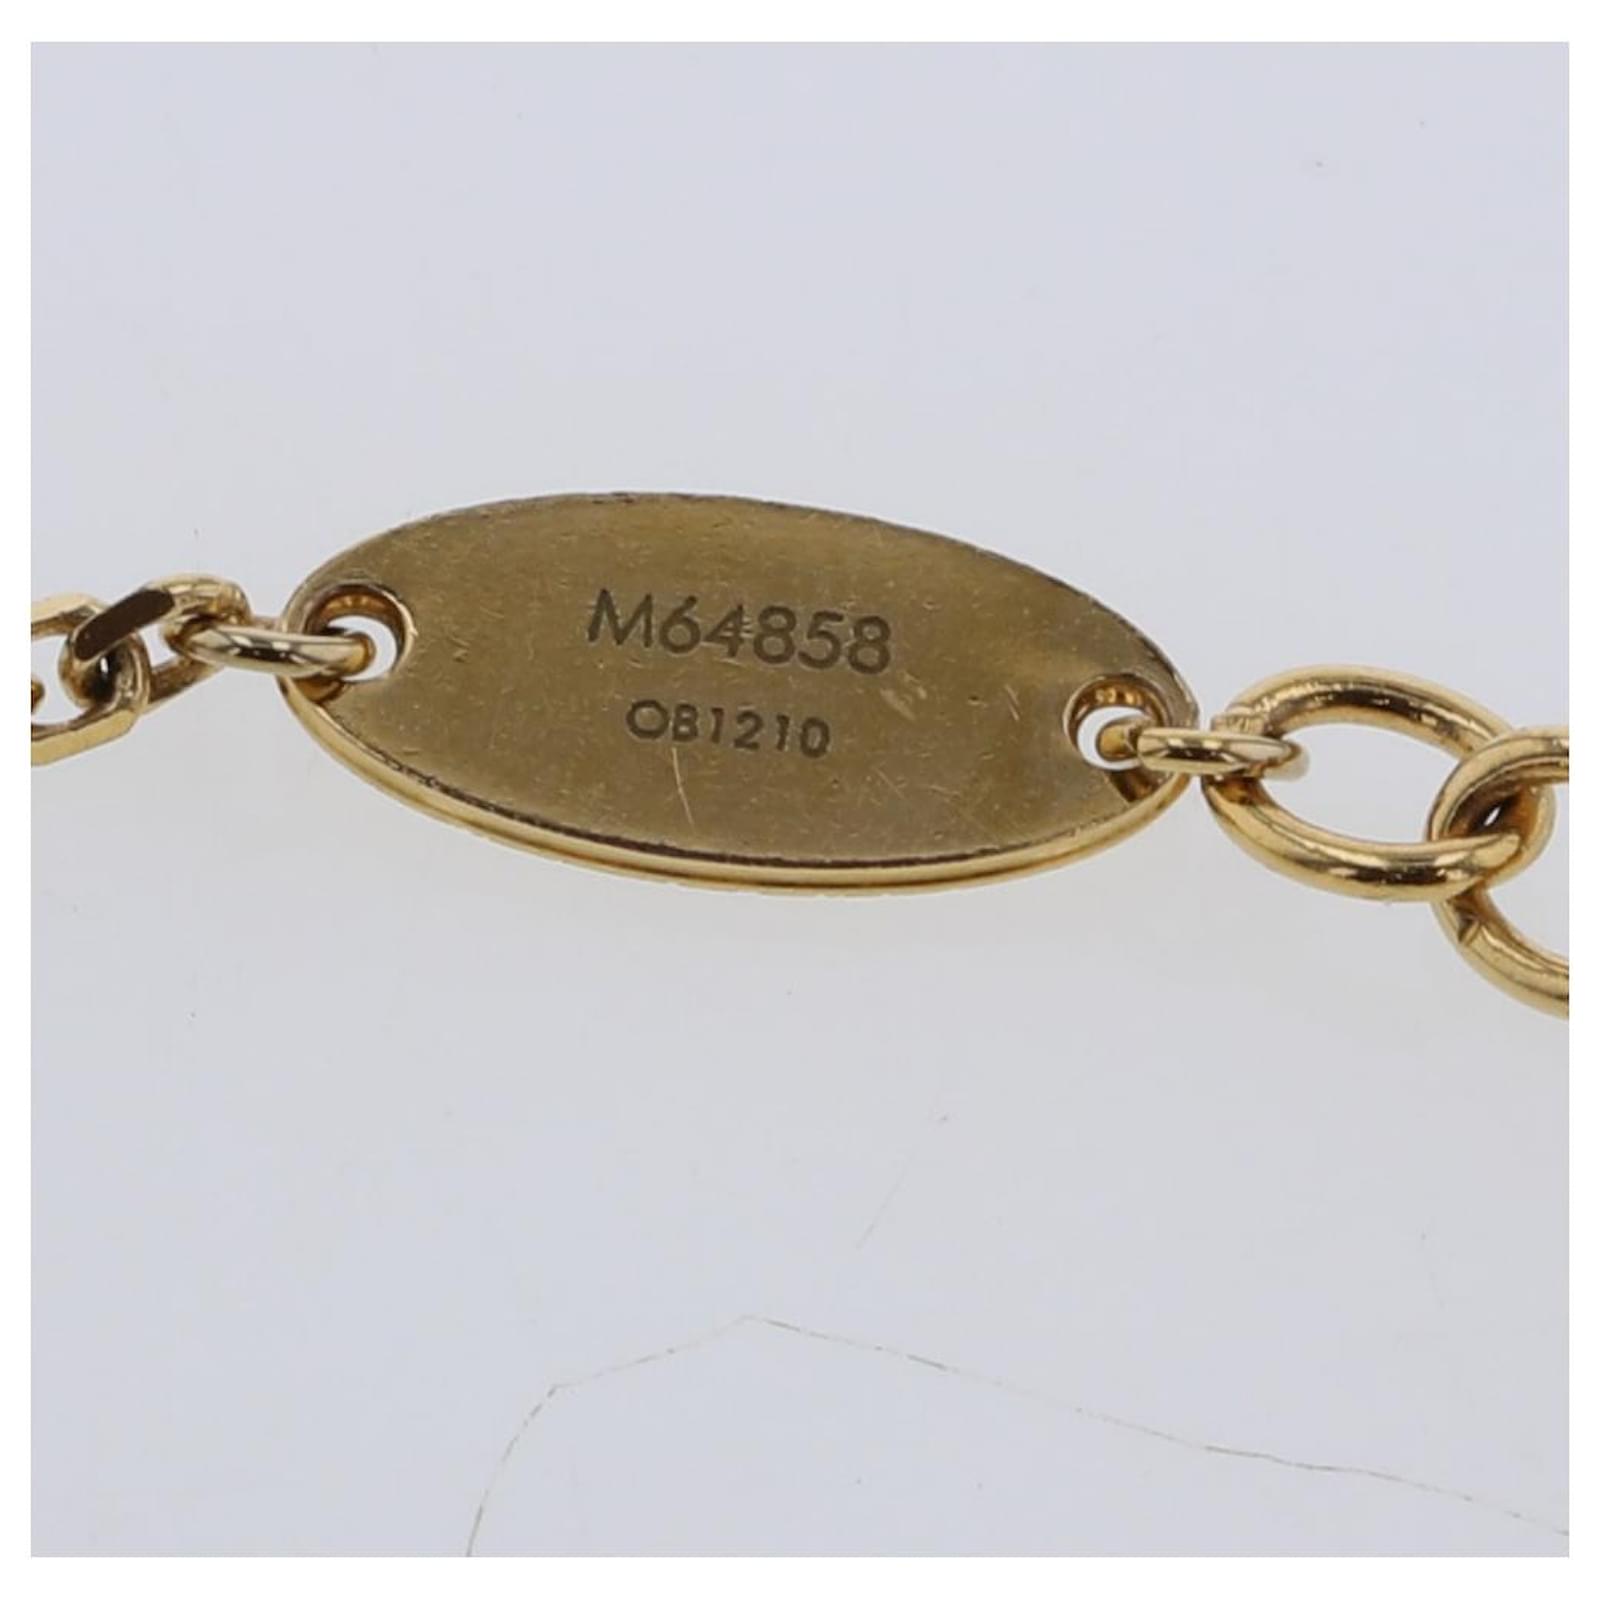 Bracelets Louis Vuitton Blooming Supple Bracelet M64858